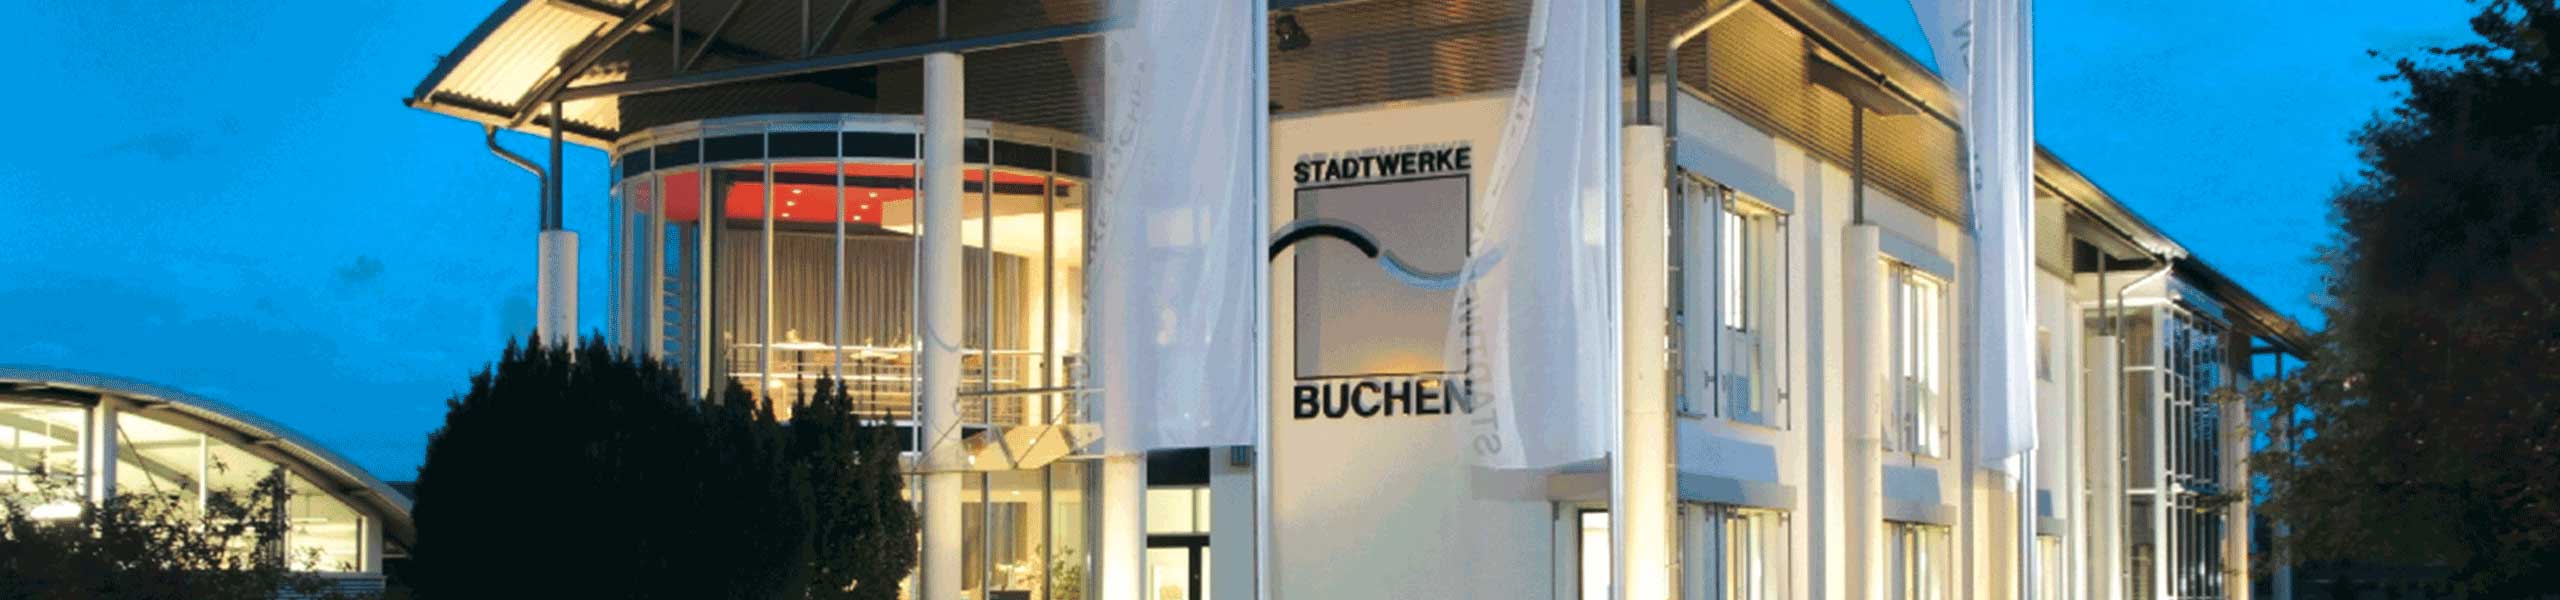 Stadtwerke Buchen GmbH & Co KG - Ihr Versorger vor Ort - Kundencenter